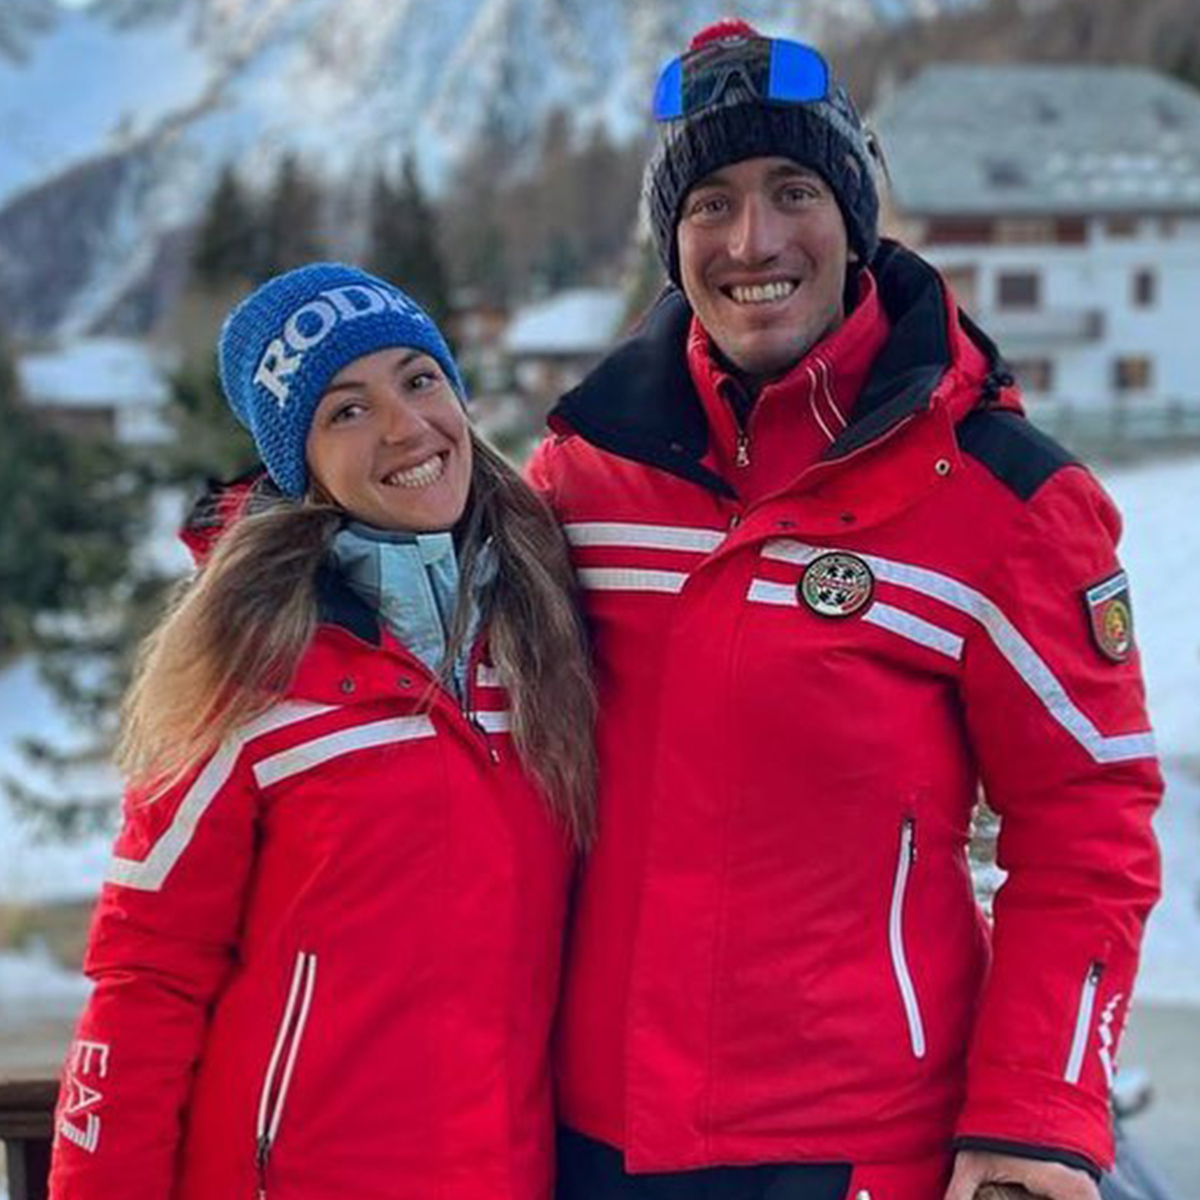 Скиорската общност претърпя сърцераздирателна загуба Професионалният скиор и приятелката му Елиза